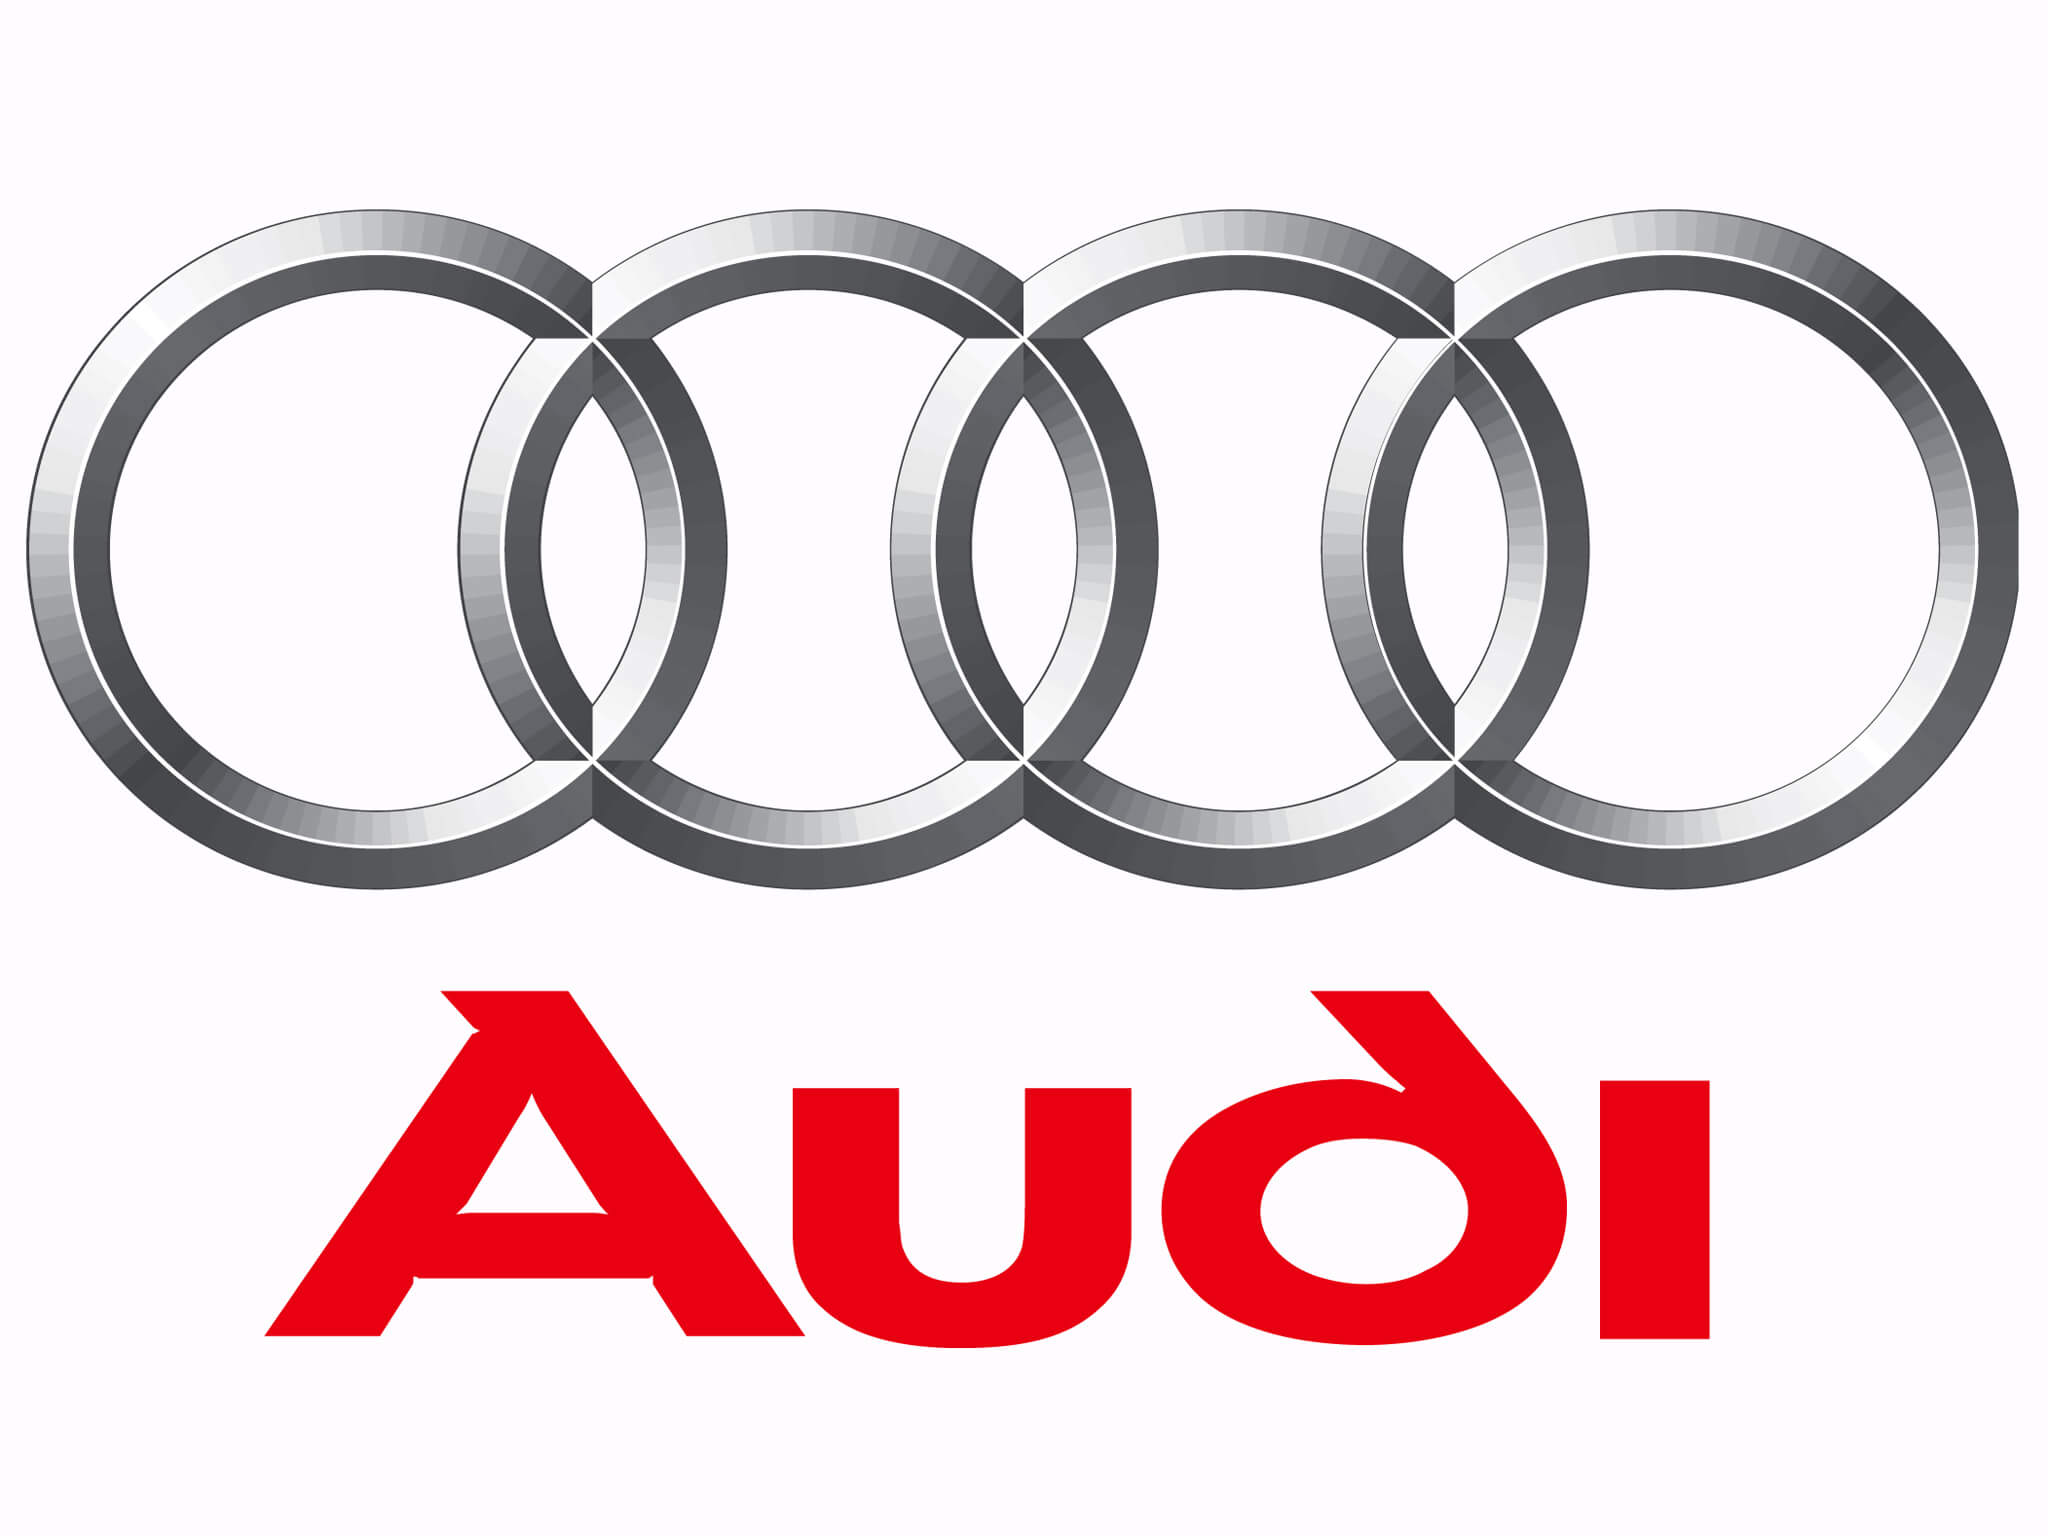 Năm 2008, Audi với tư cách là thương hiệu xe sang của Đức đã chính thức nhập khẩu xe nguyên chiếc vào thị trường Việt Nam